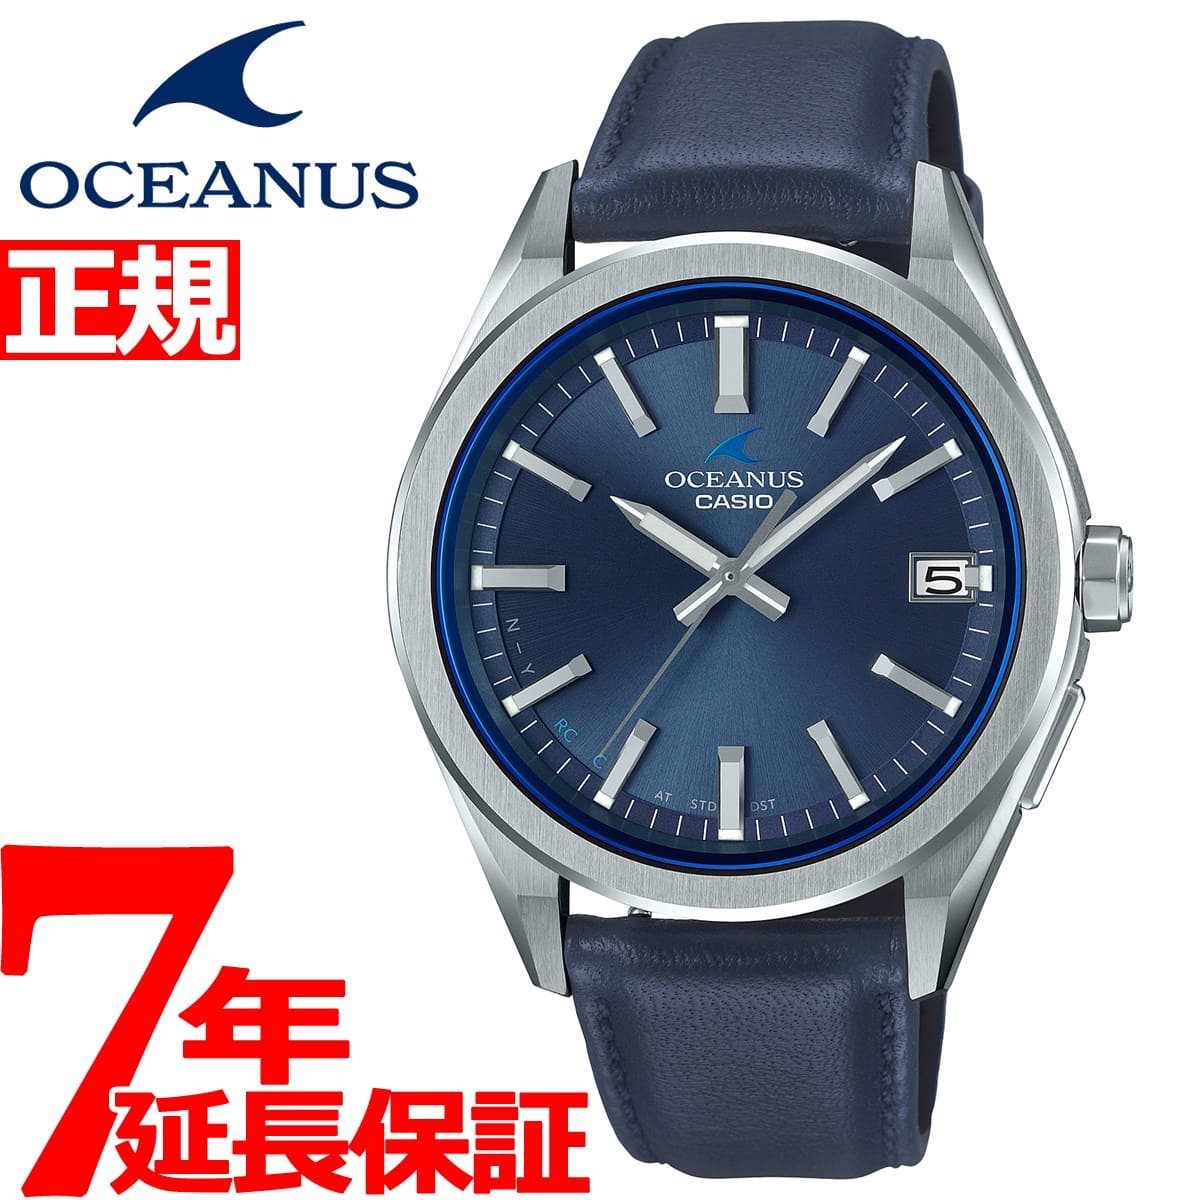 38％割引ホワイト系最新な カシオCASIOオシアナス OCW-T200SLE-2AJR 腕時計(アナログ)  メンズホワイト系-THULOKITAB.COM